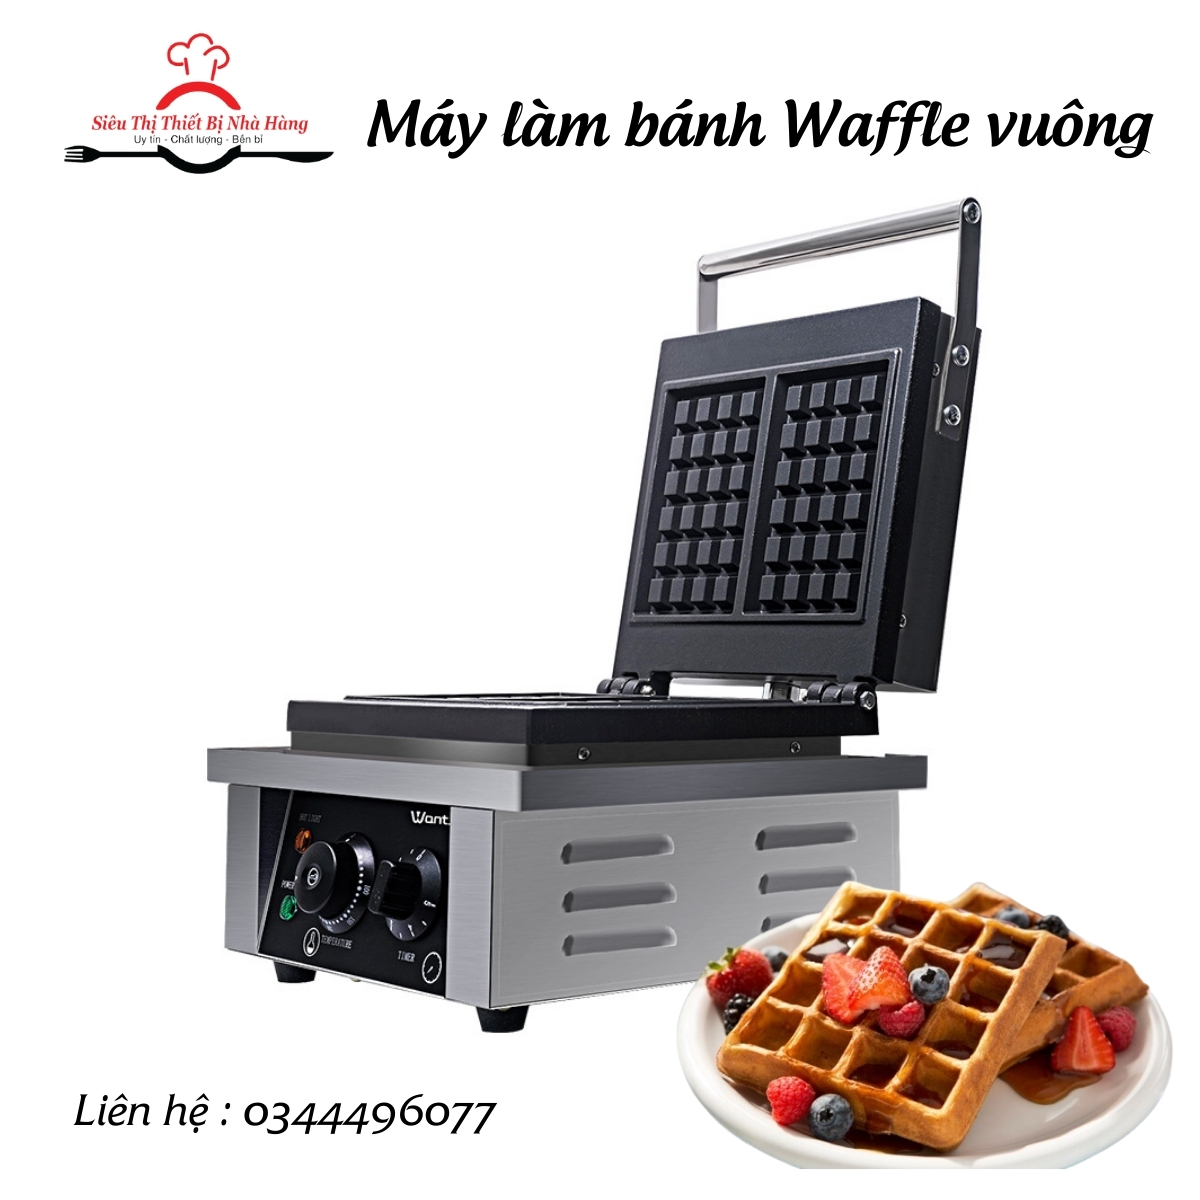 Máy làm bánh waffle vuông giá rẻ chất lượng